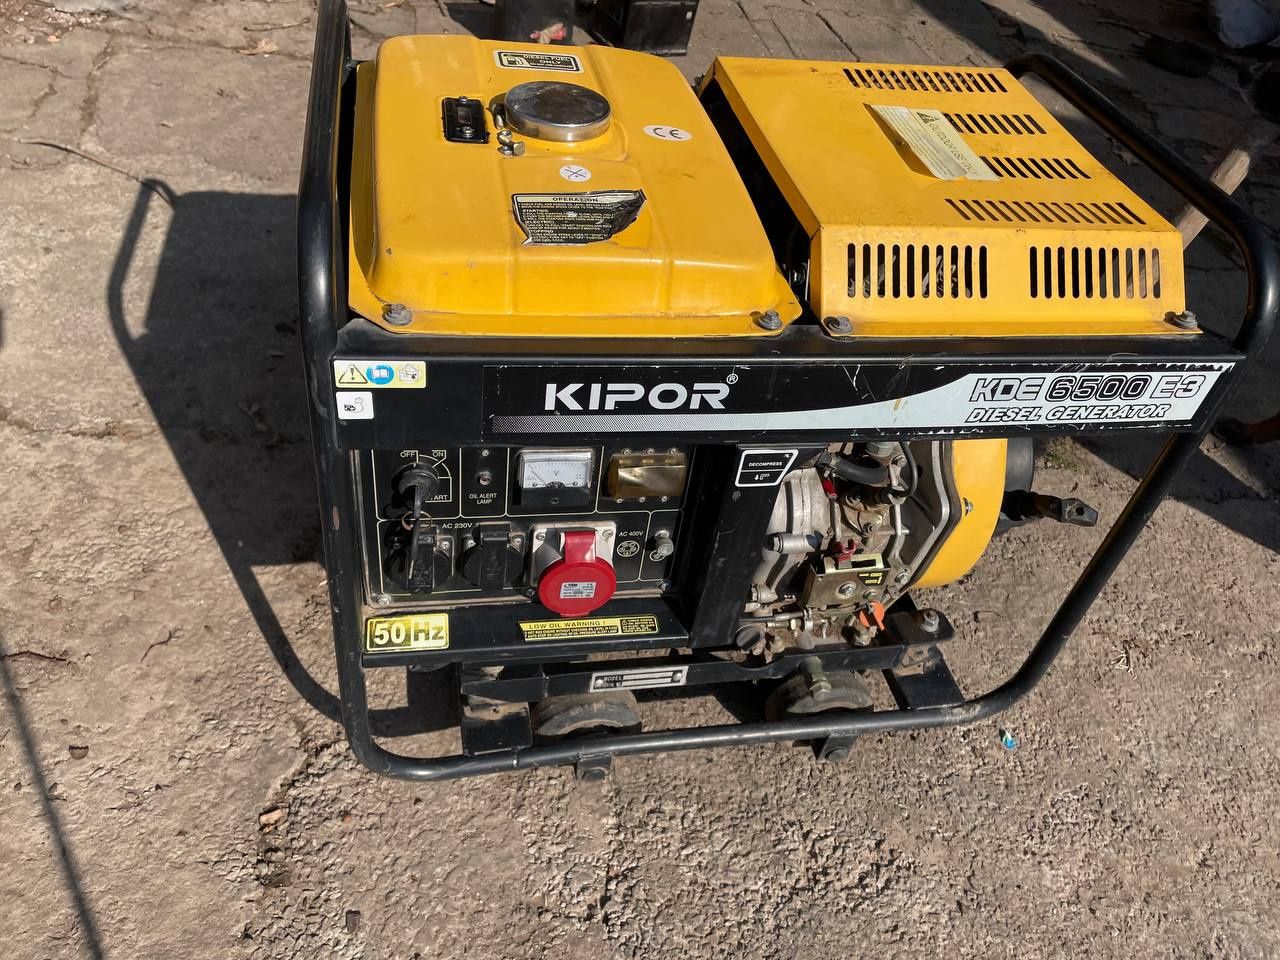 срочно продам дизельный генератор Kipor Kde6500 E3